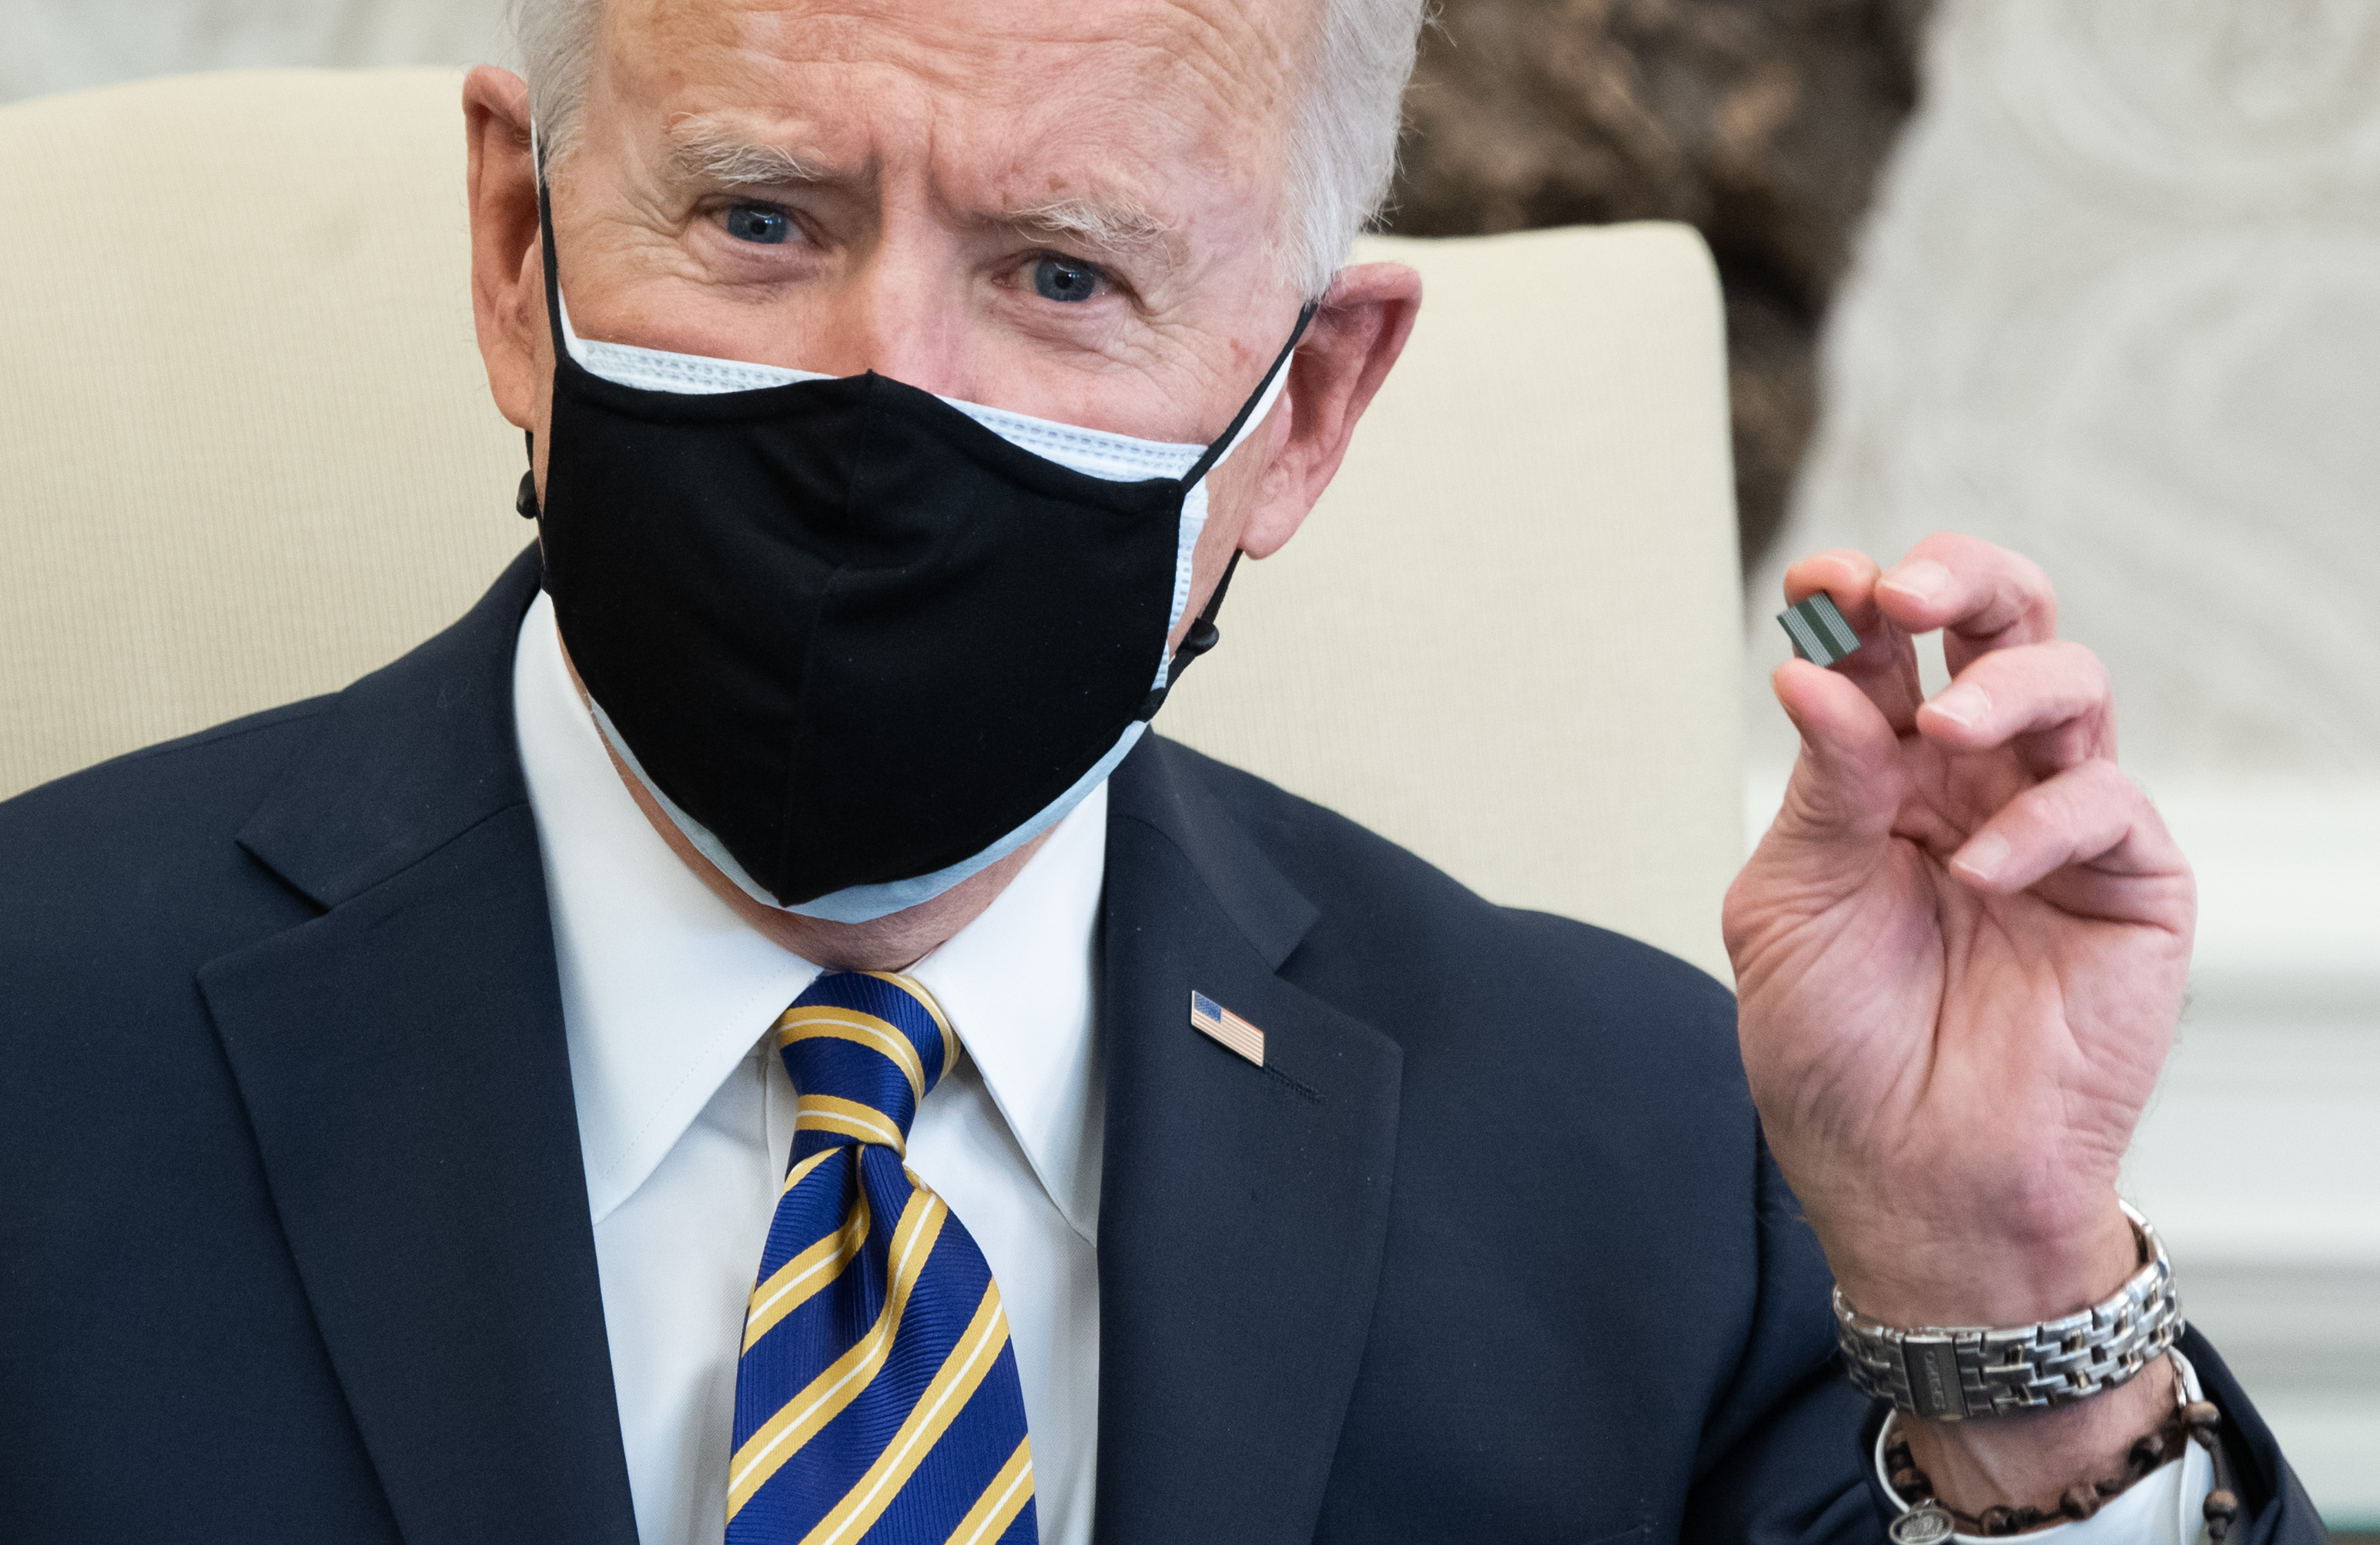 Joe Biden holds up a microchip 